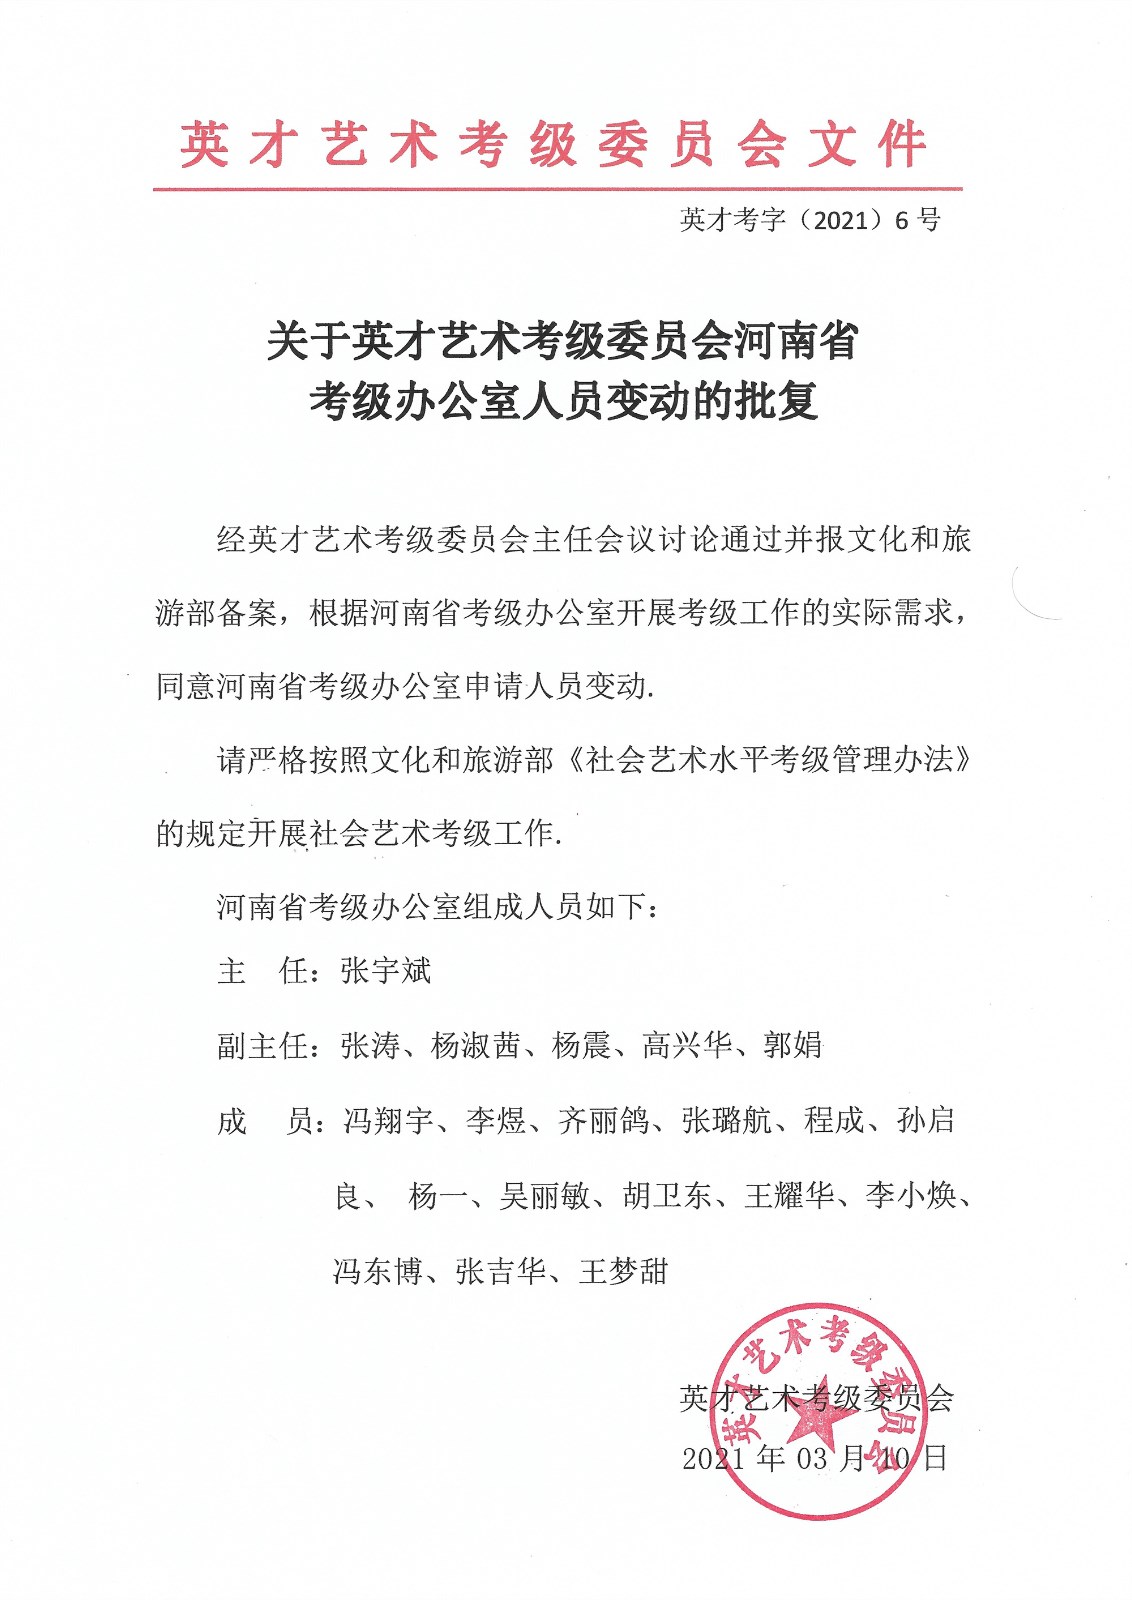 关于成立英才艺术考级委员会 河南省考级办公室的批复